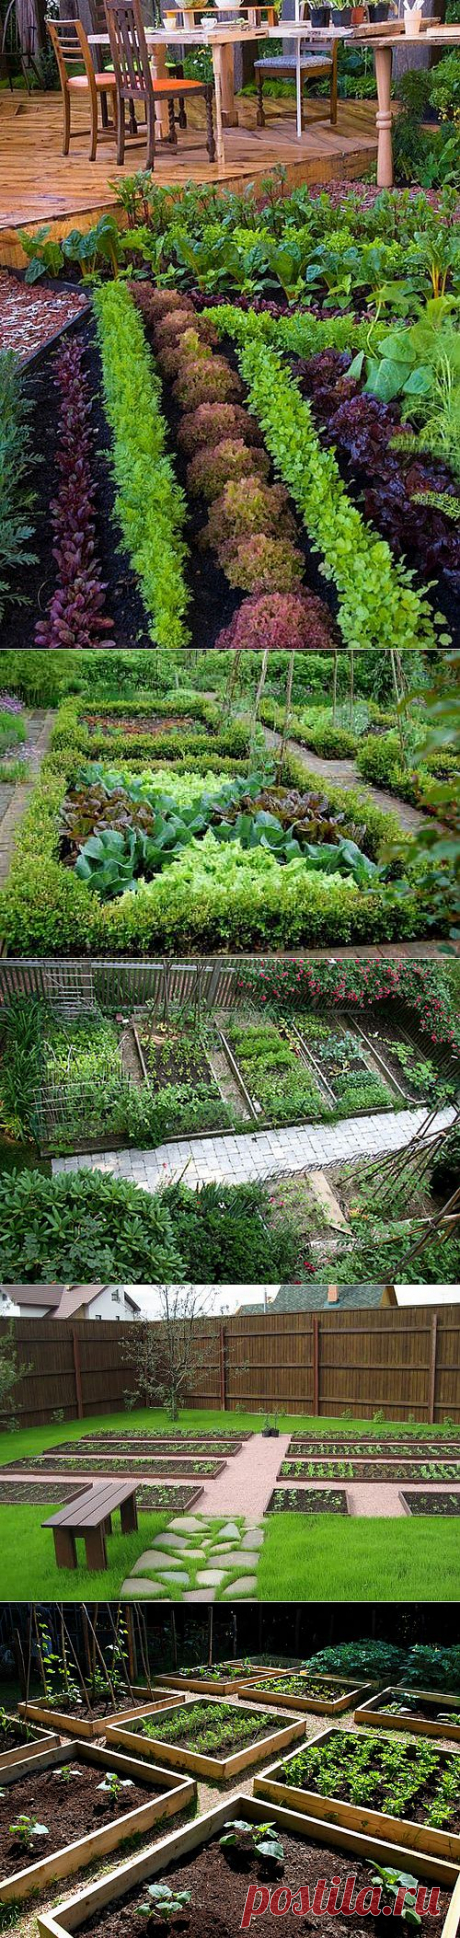 Декоративный огород: как сделать красивые грядки на участке | Наш уютный дом